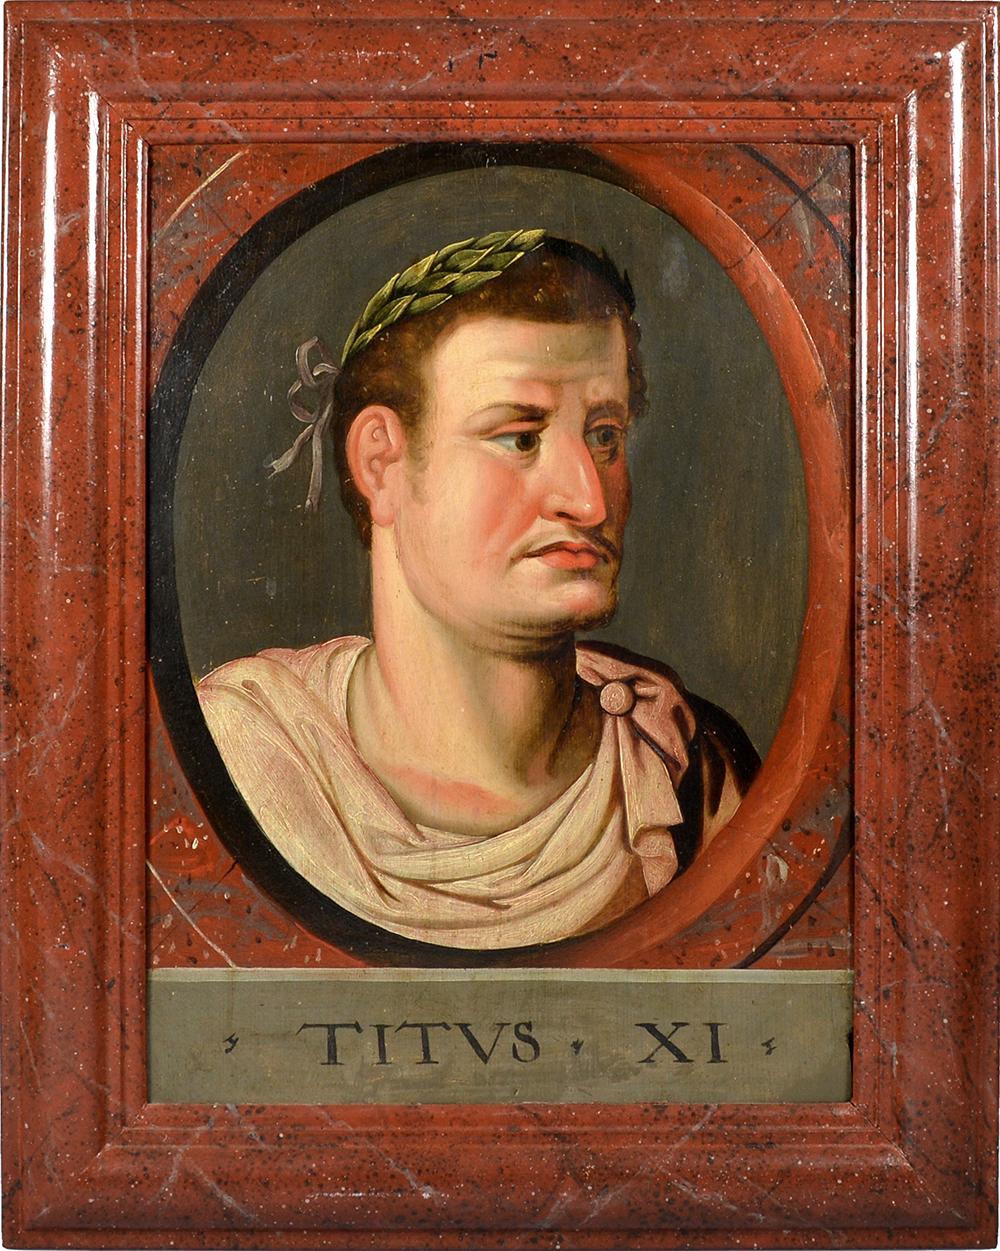 Italienische Schule, nach Peter Paul Rubens
 
Zwei Porträts aus der Reihe der 